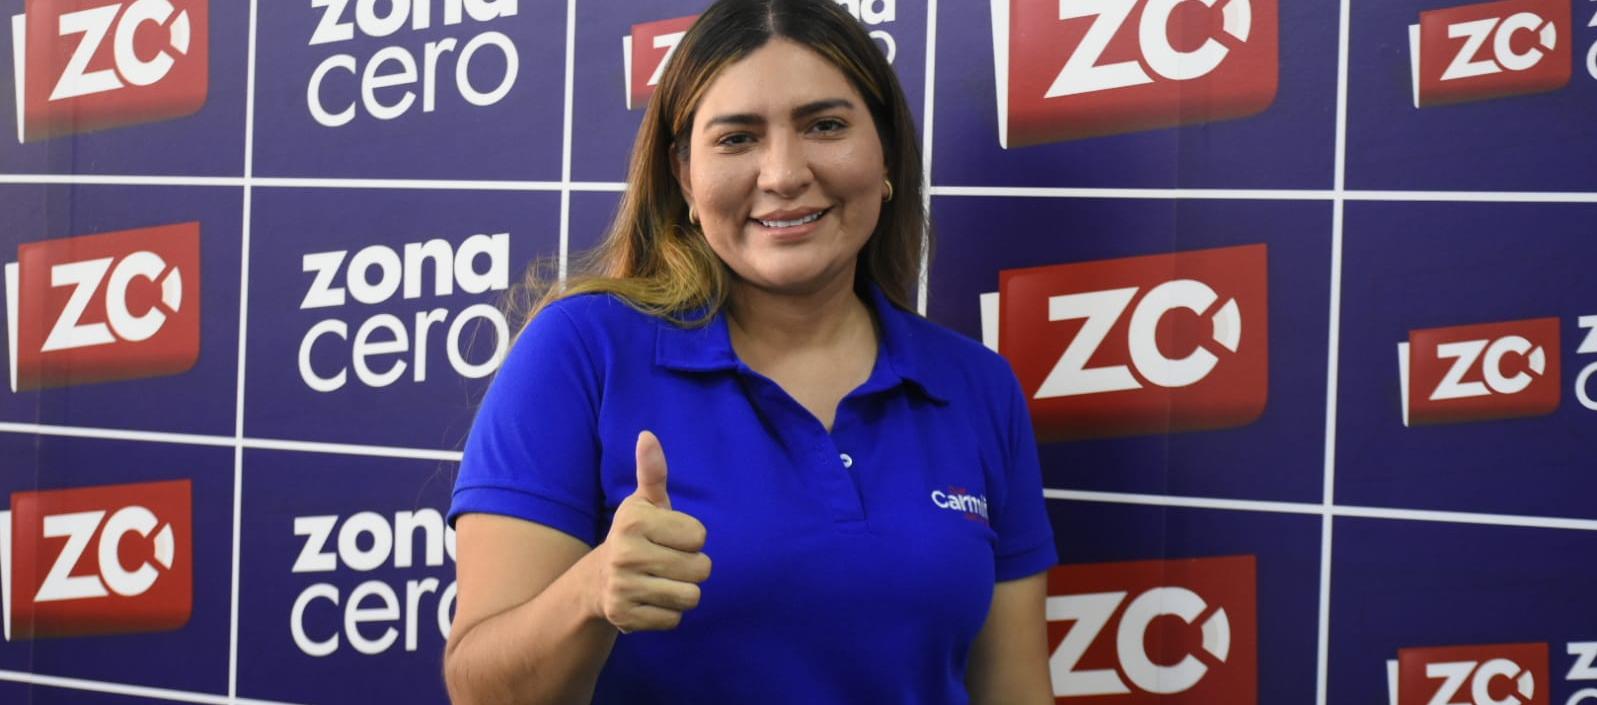 Carmiña Navarro De la Hoz, candidata a la Alcaldía de Galapa por Cambio Radical, en la redacción de Zona Cero